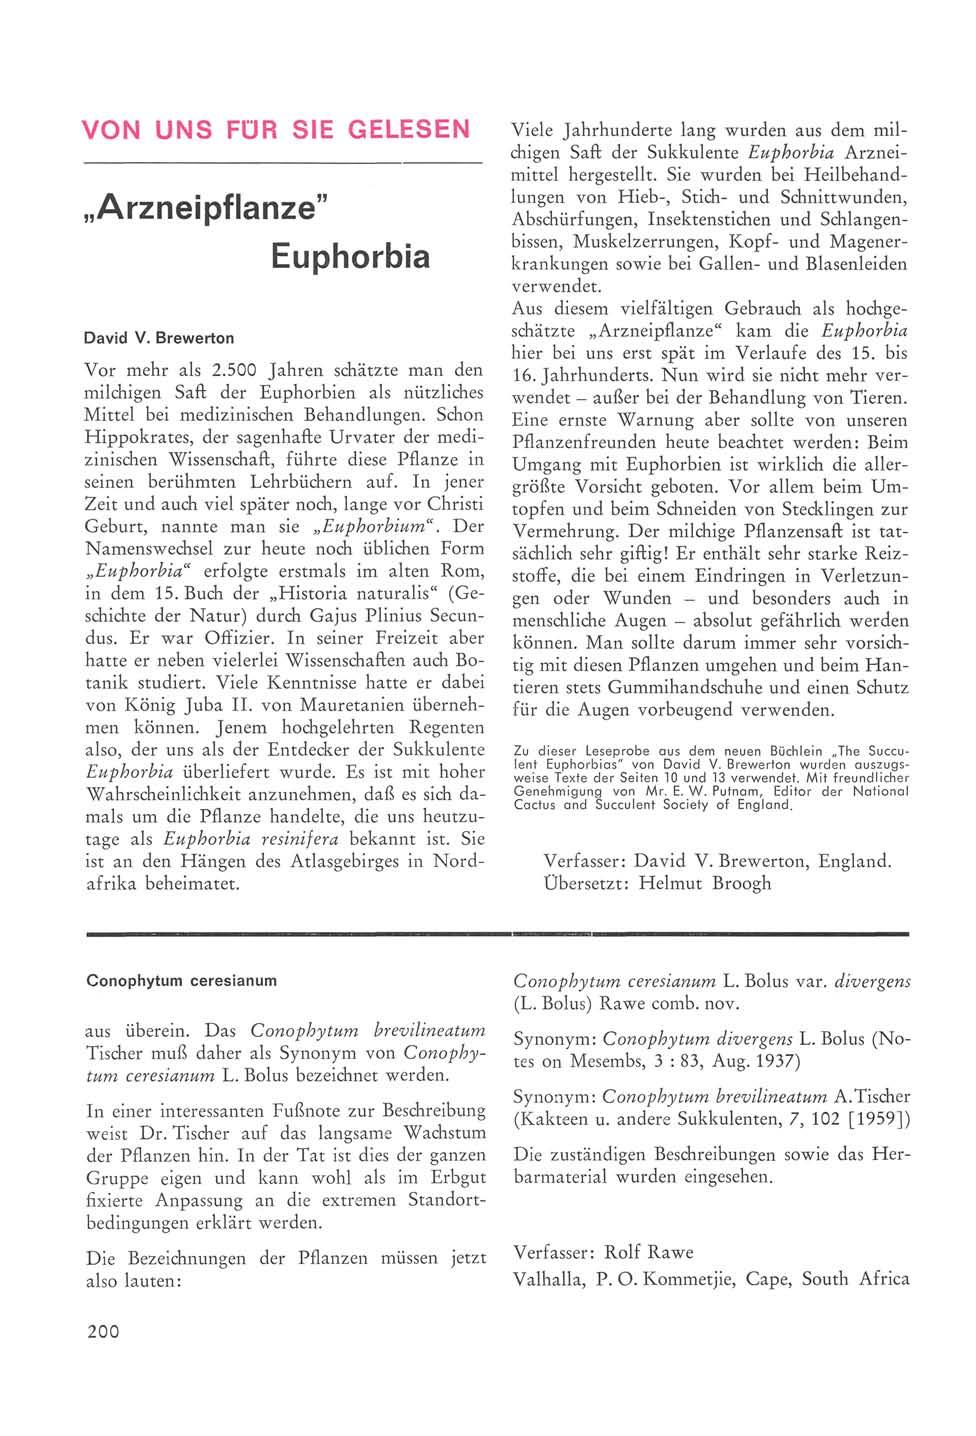 VON UNS FÜR SIE GELESEN Arzneipflanze" David V. Brewerton Euphorbia Vor mehr als 2.500 Jahren schätzte man den milchigen Saft der Euphorbien als nützliches Mittel bei medizinischen Behandlungen.